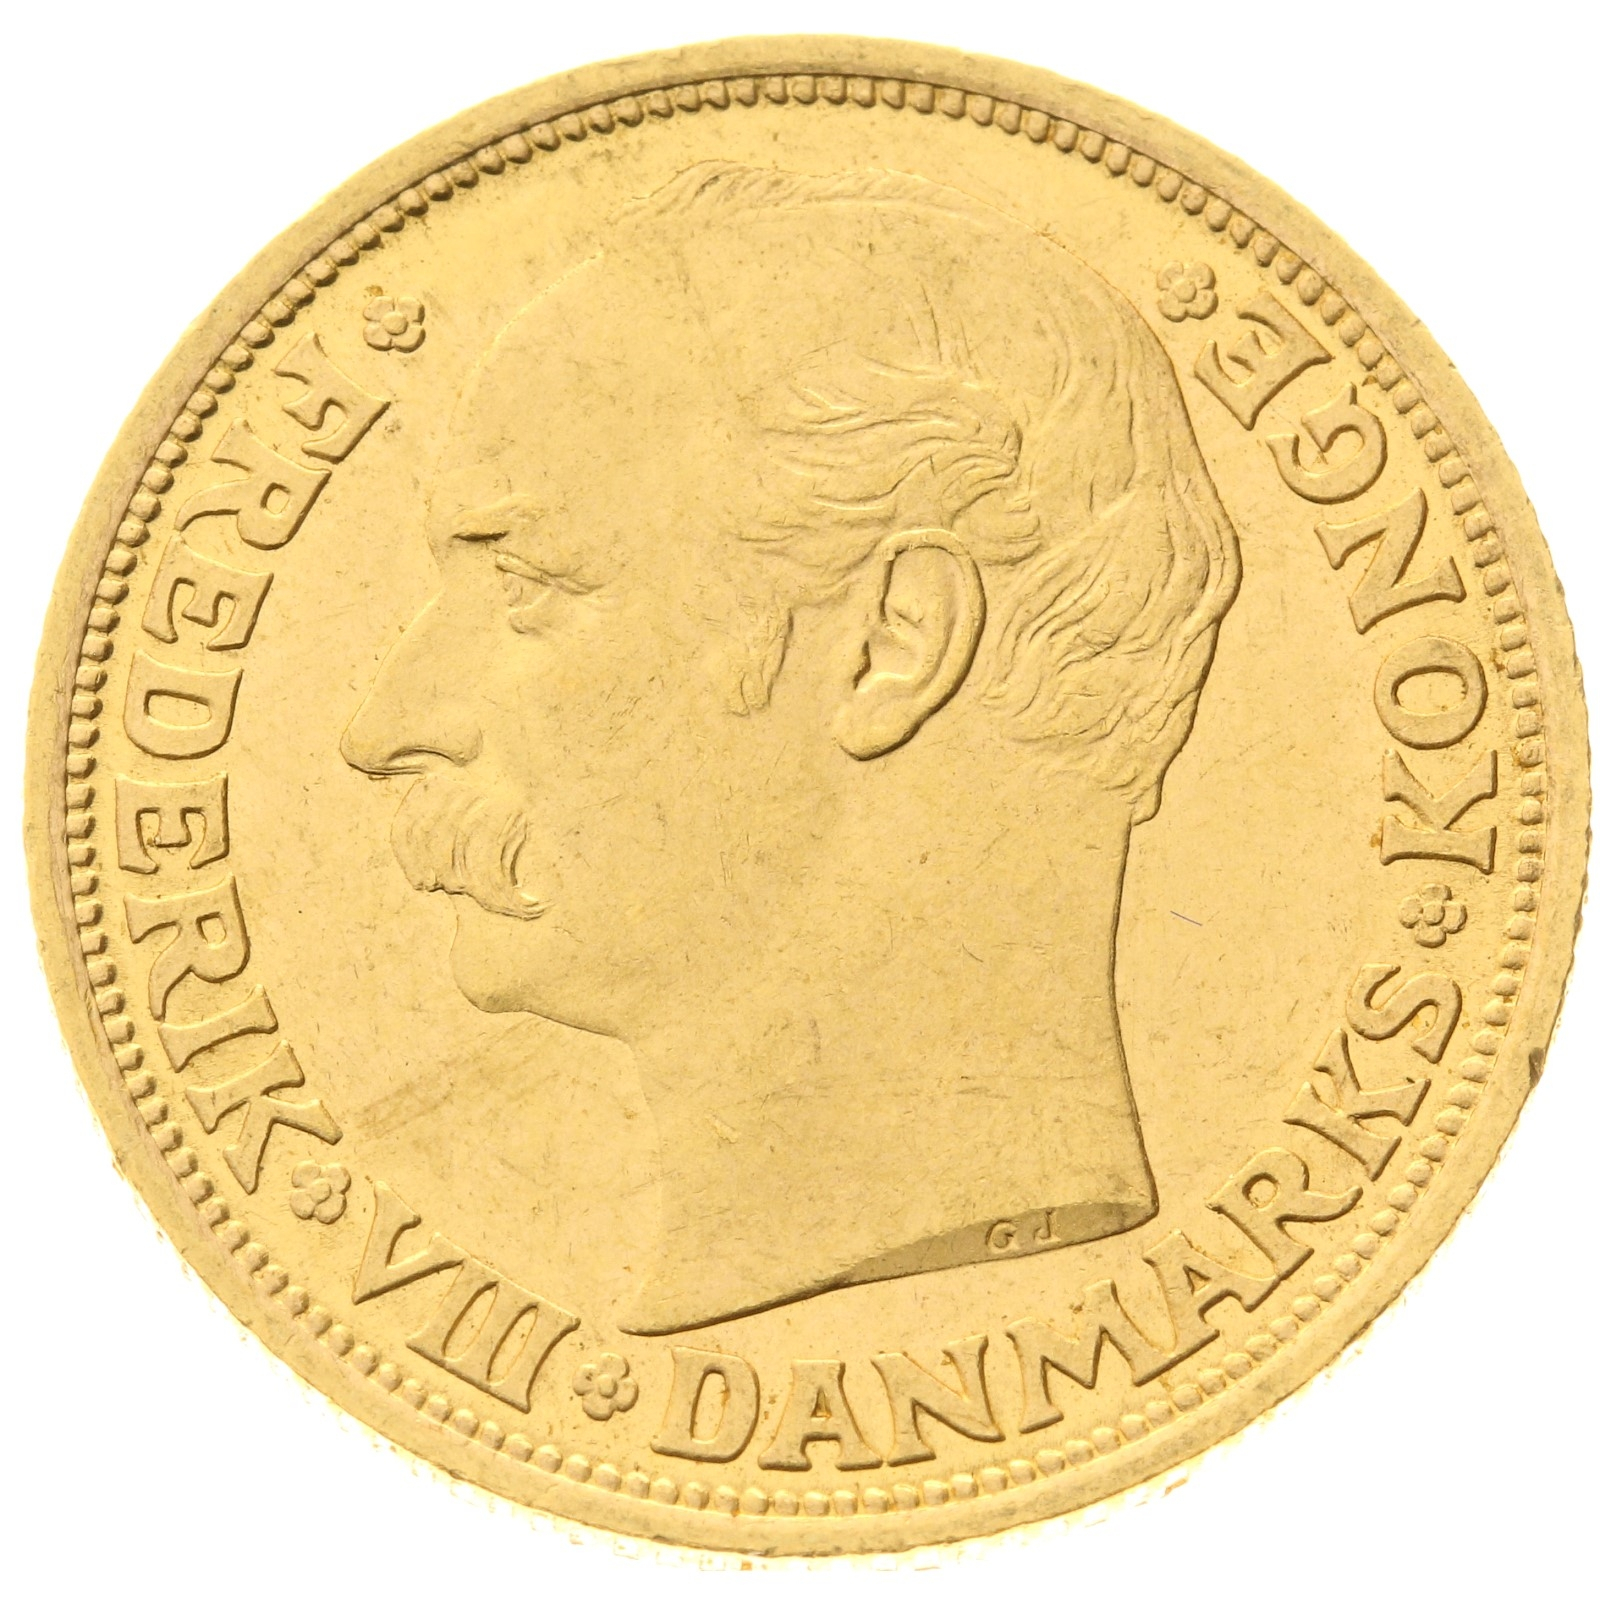 Denmark - 20 kroner - 1912 - Frederik VIII 